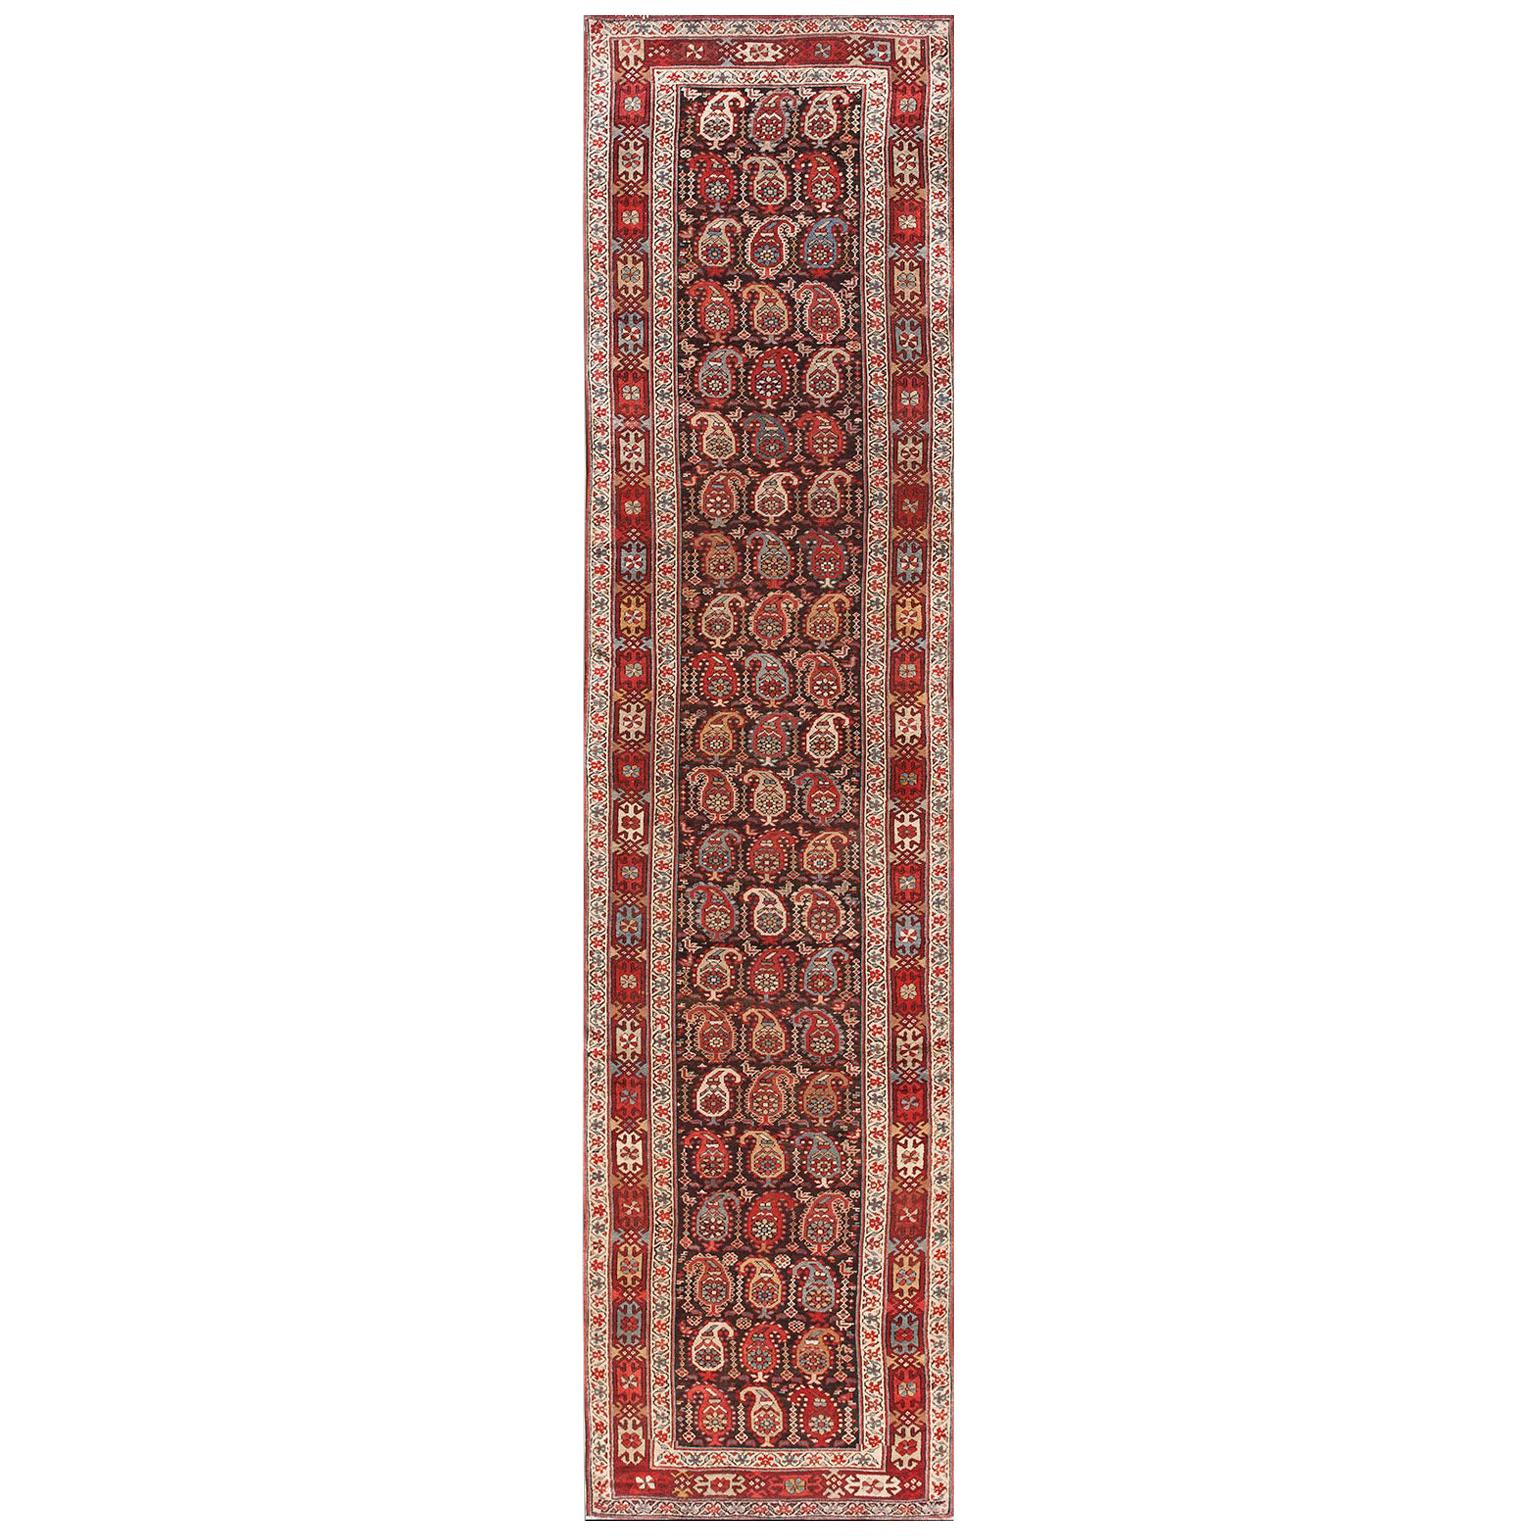 19. Jahrhundert N.W. Persischer Teppich ( 3'2" x 12'8" - 97 x 386)